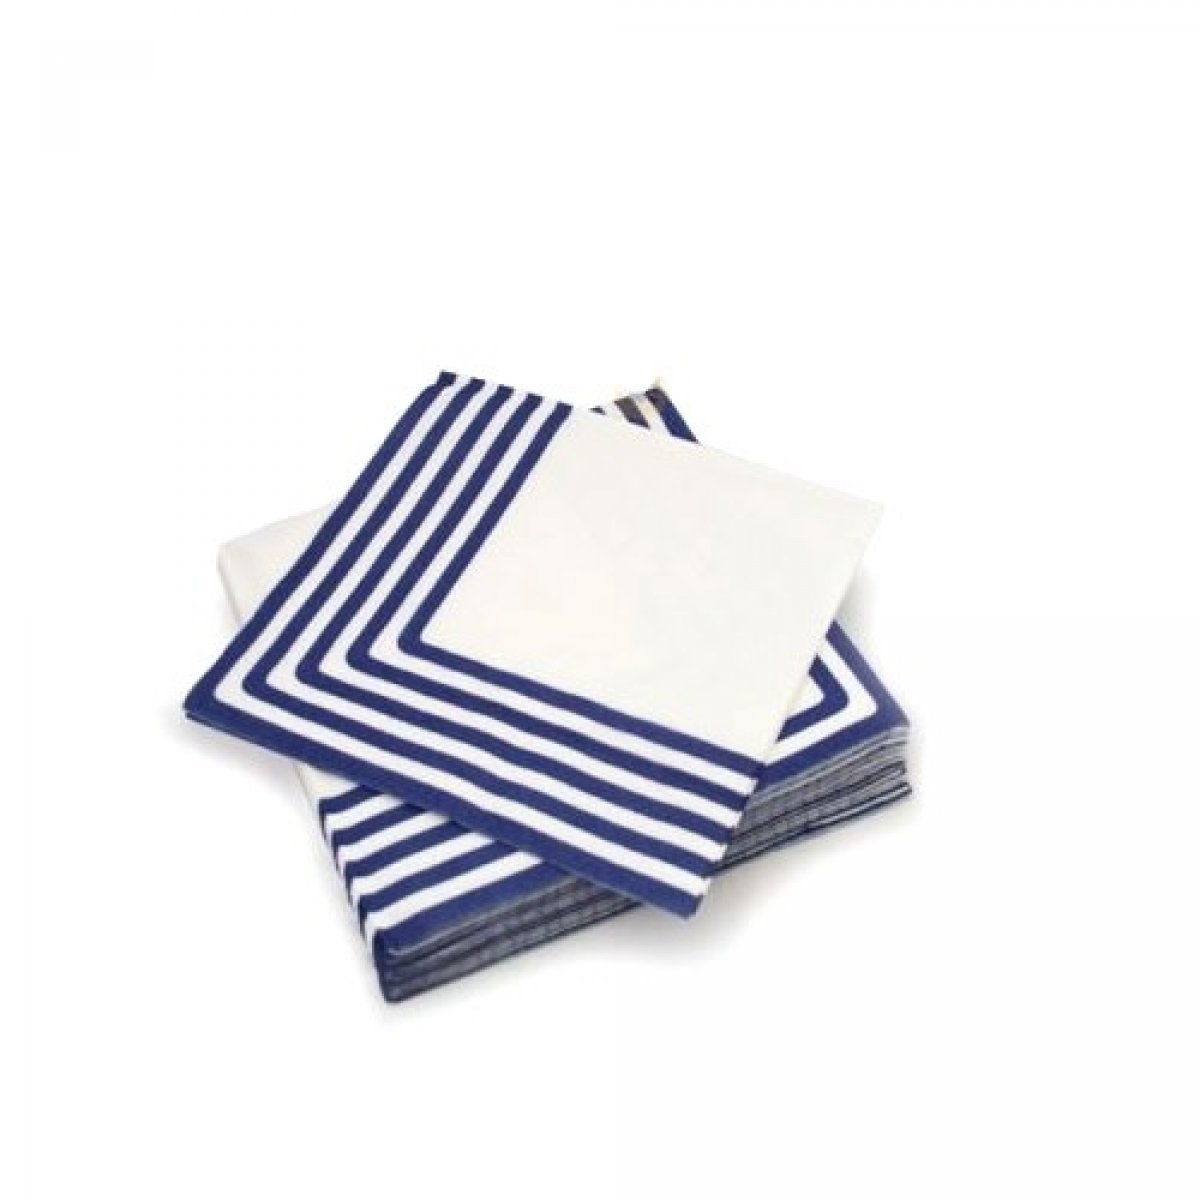 Serviettes en papier marinière bleu marine x 20 pièces